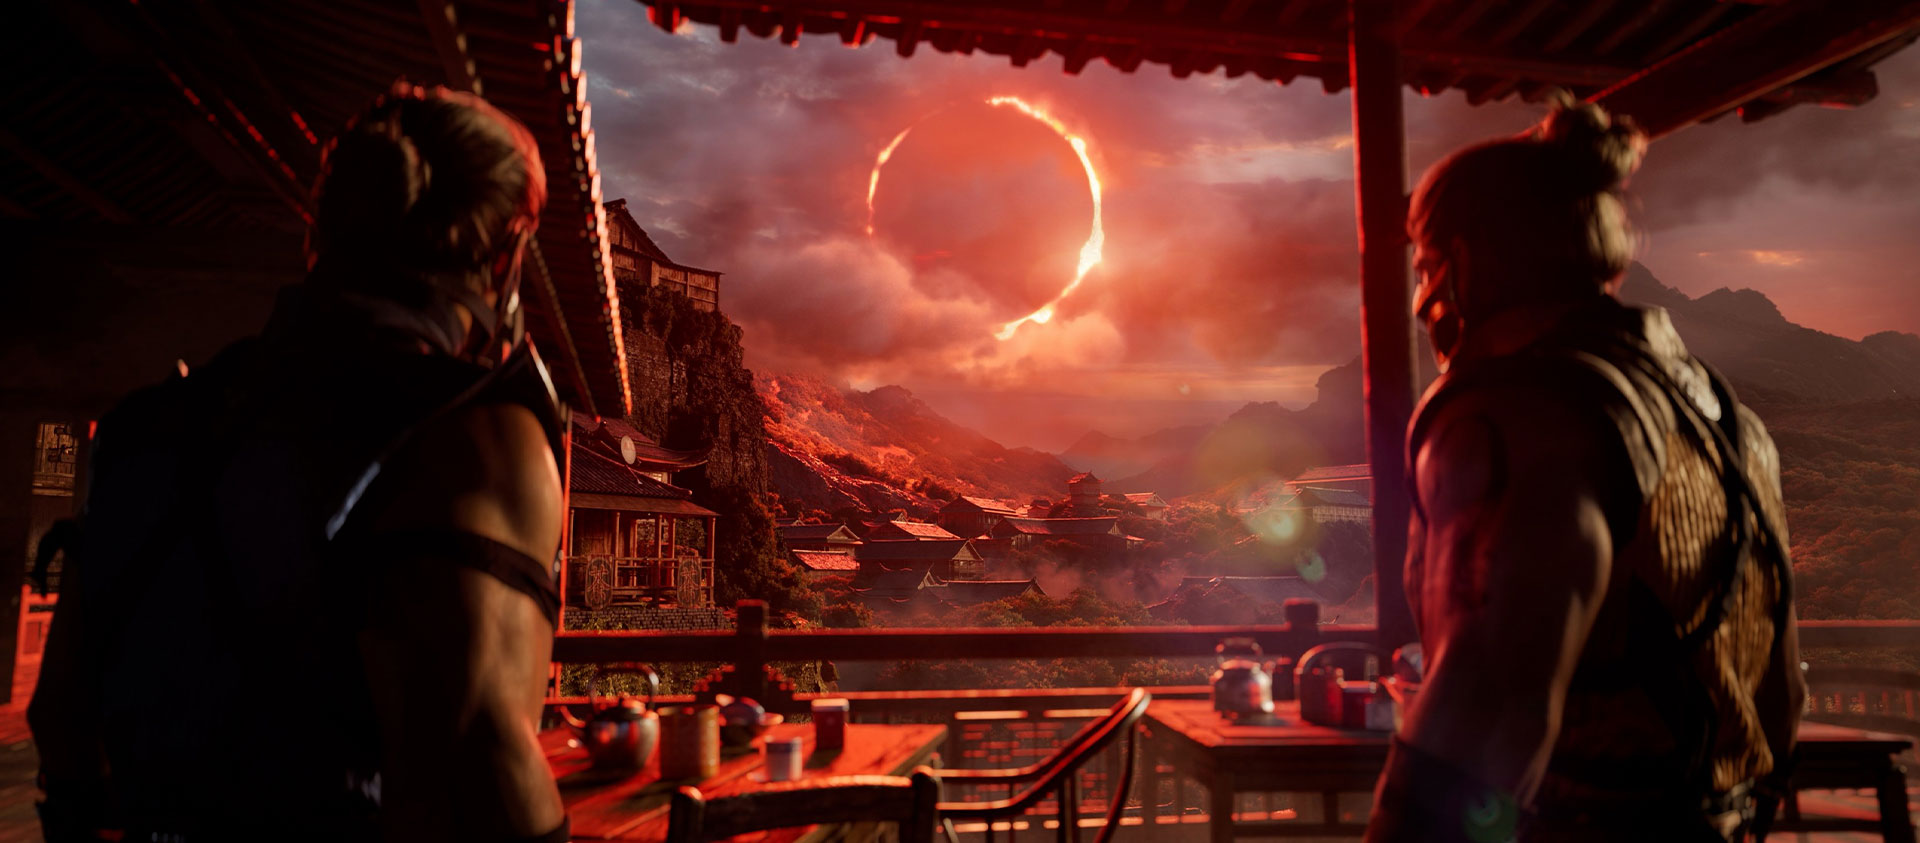 『Mortal Kombat 1』、小屋の下で遠くの赤い日食を凝視する 2 人のキャラクター。